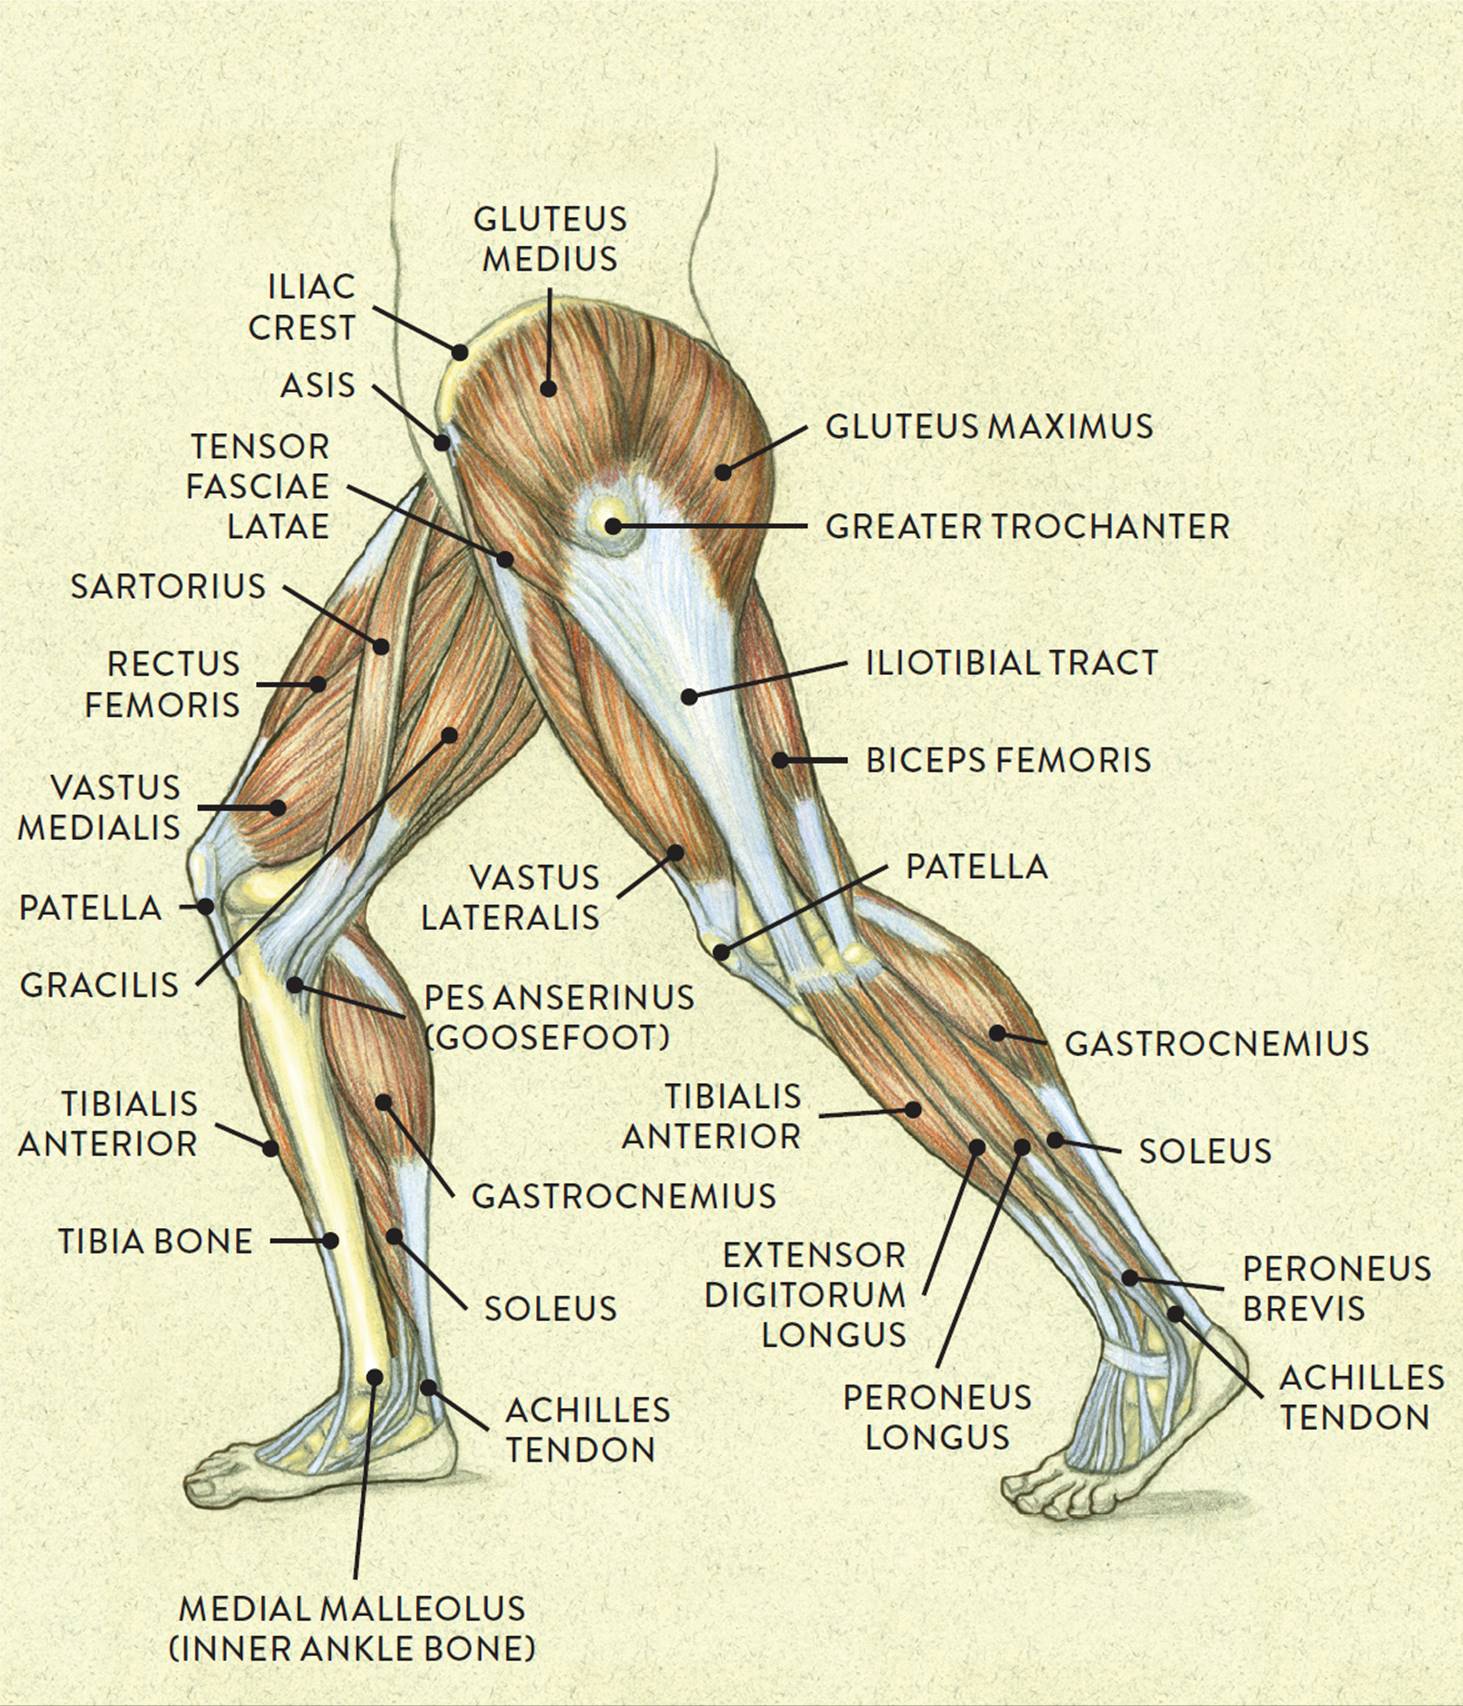 견열골절 Avulsion fracture - 스포츠재활전문 더바른핏 : 네이버 블로그